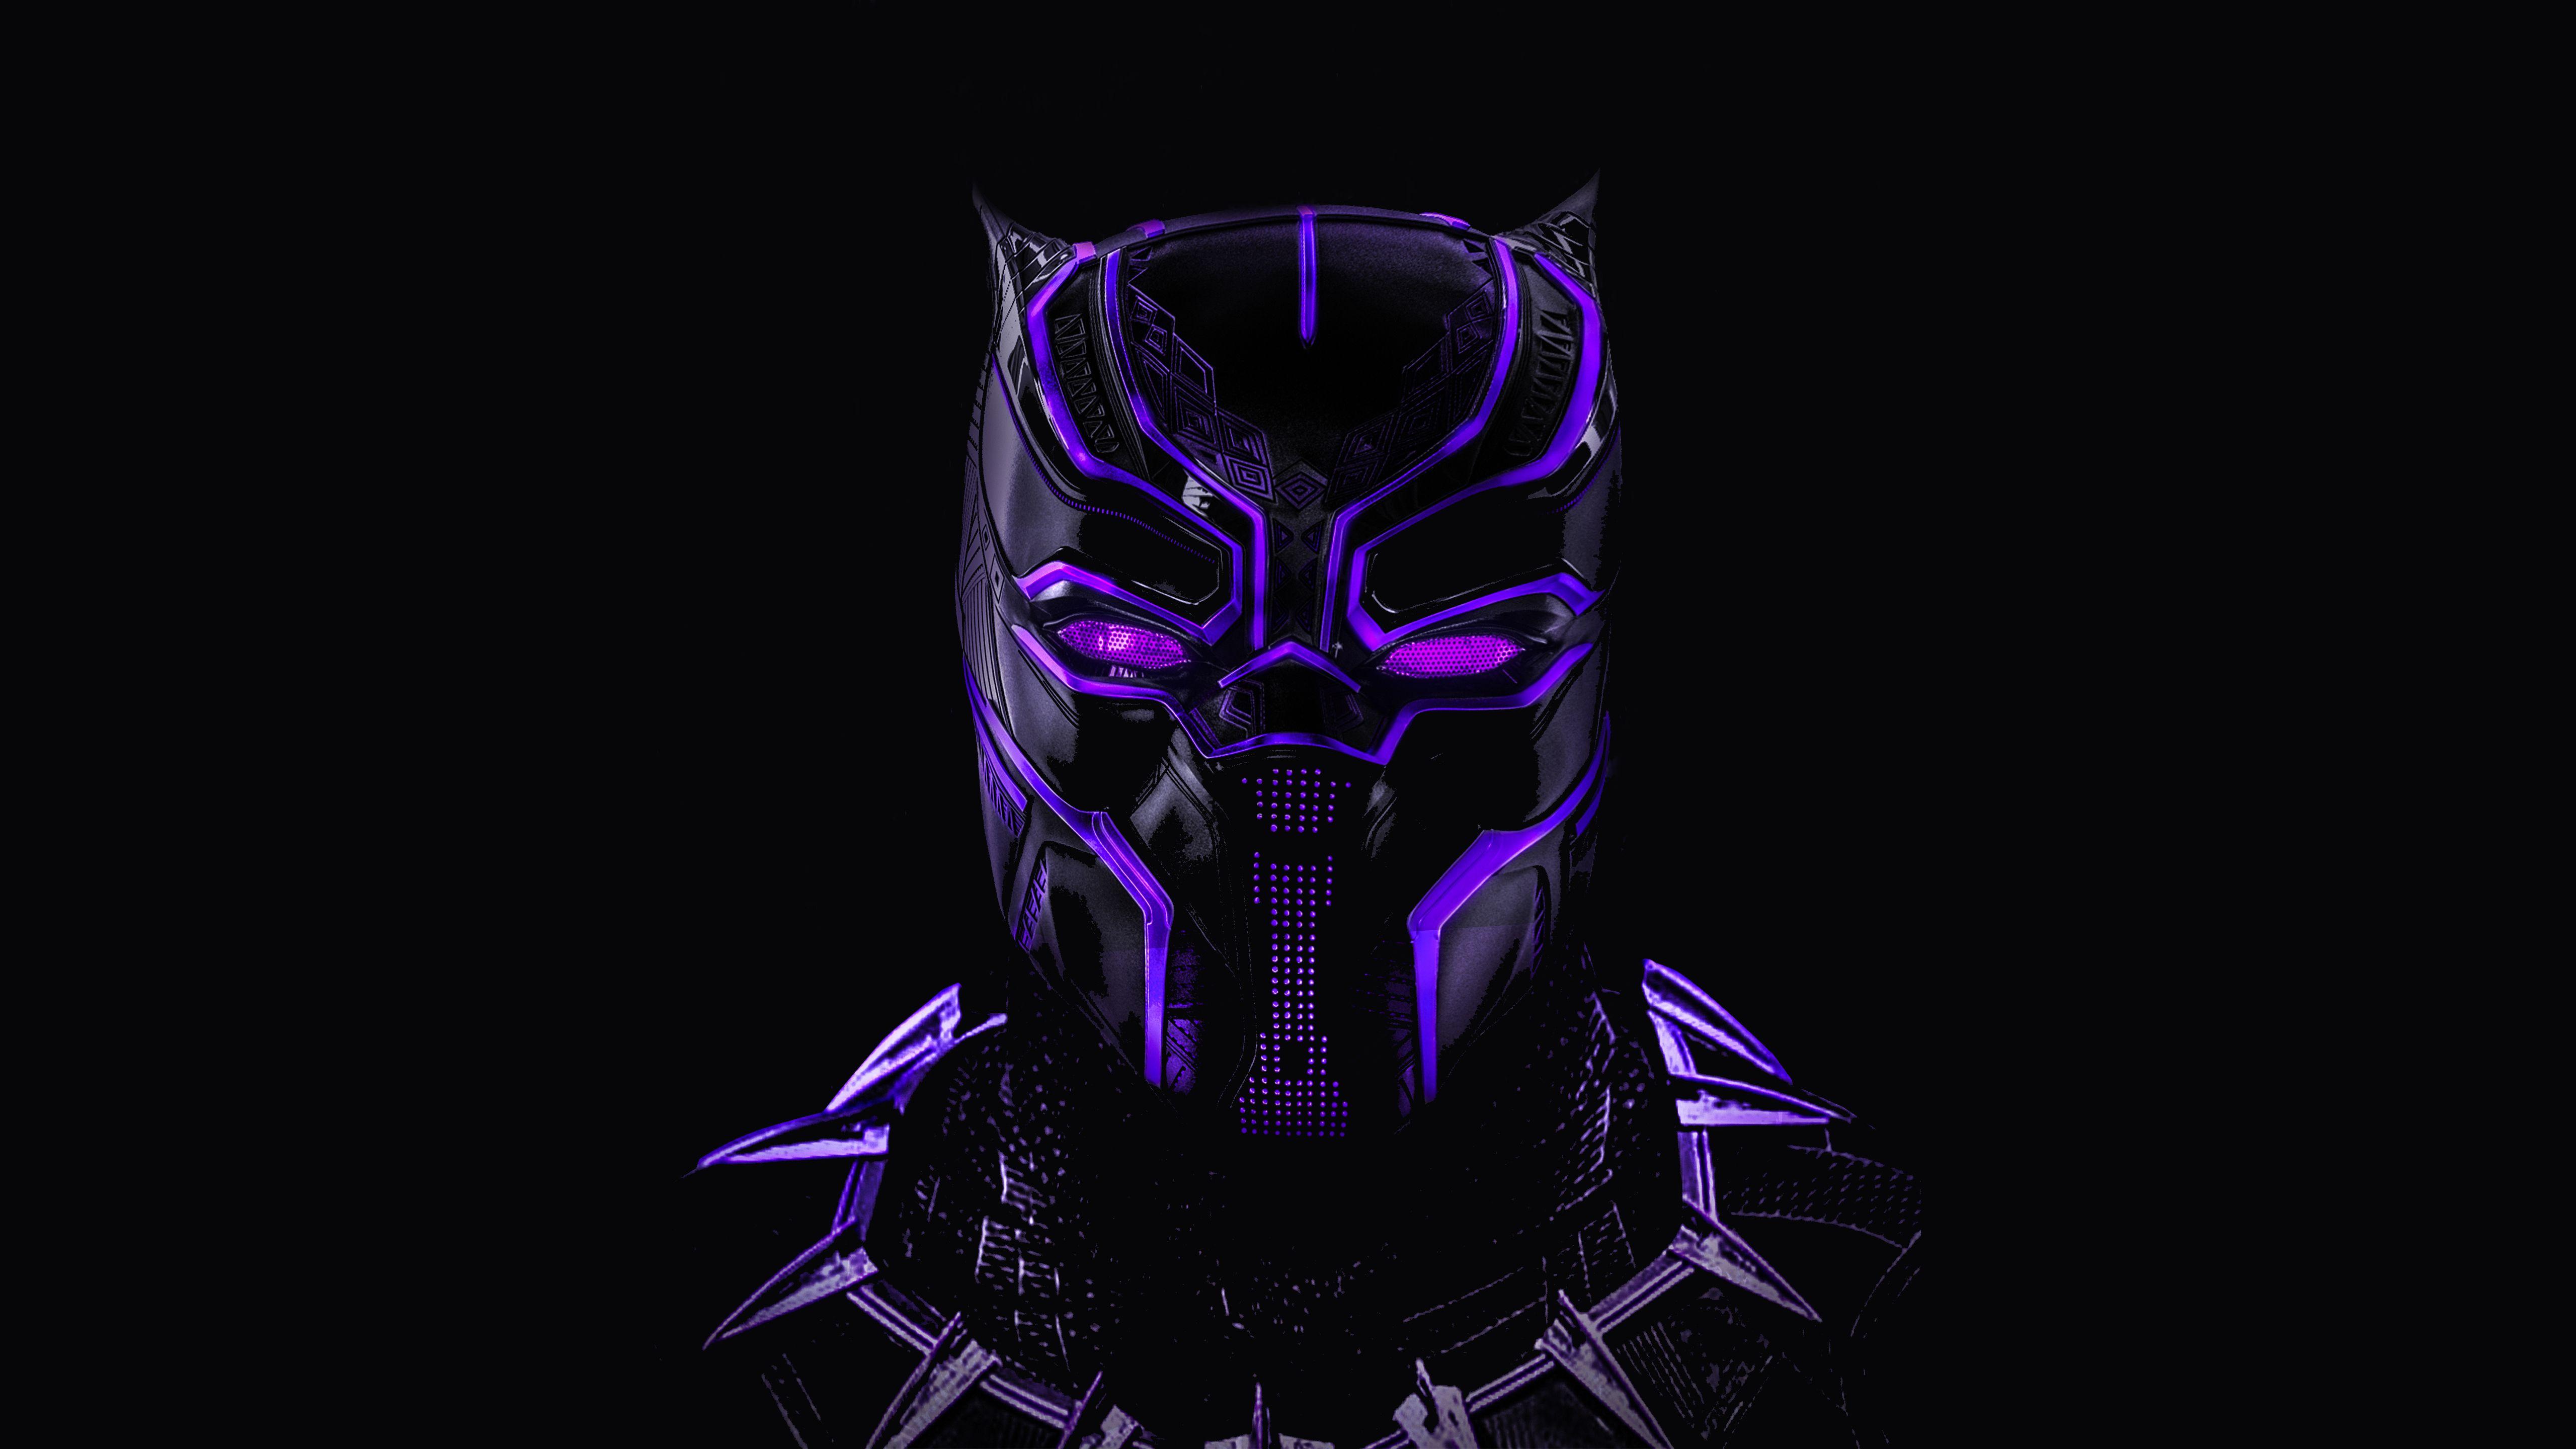 Black Panther 4K Ultra HD Dark Wallpapers - Top Free Black Panther 4K